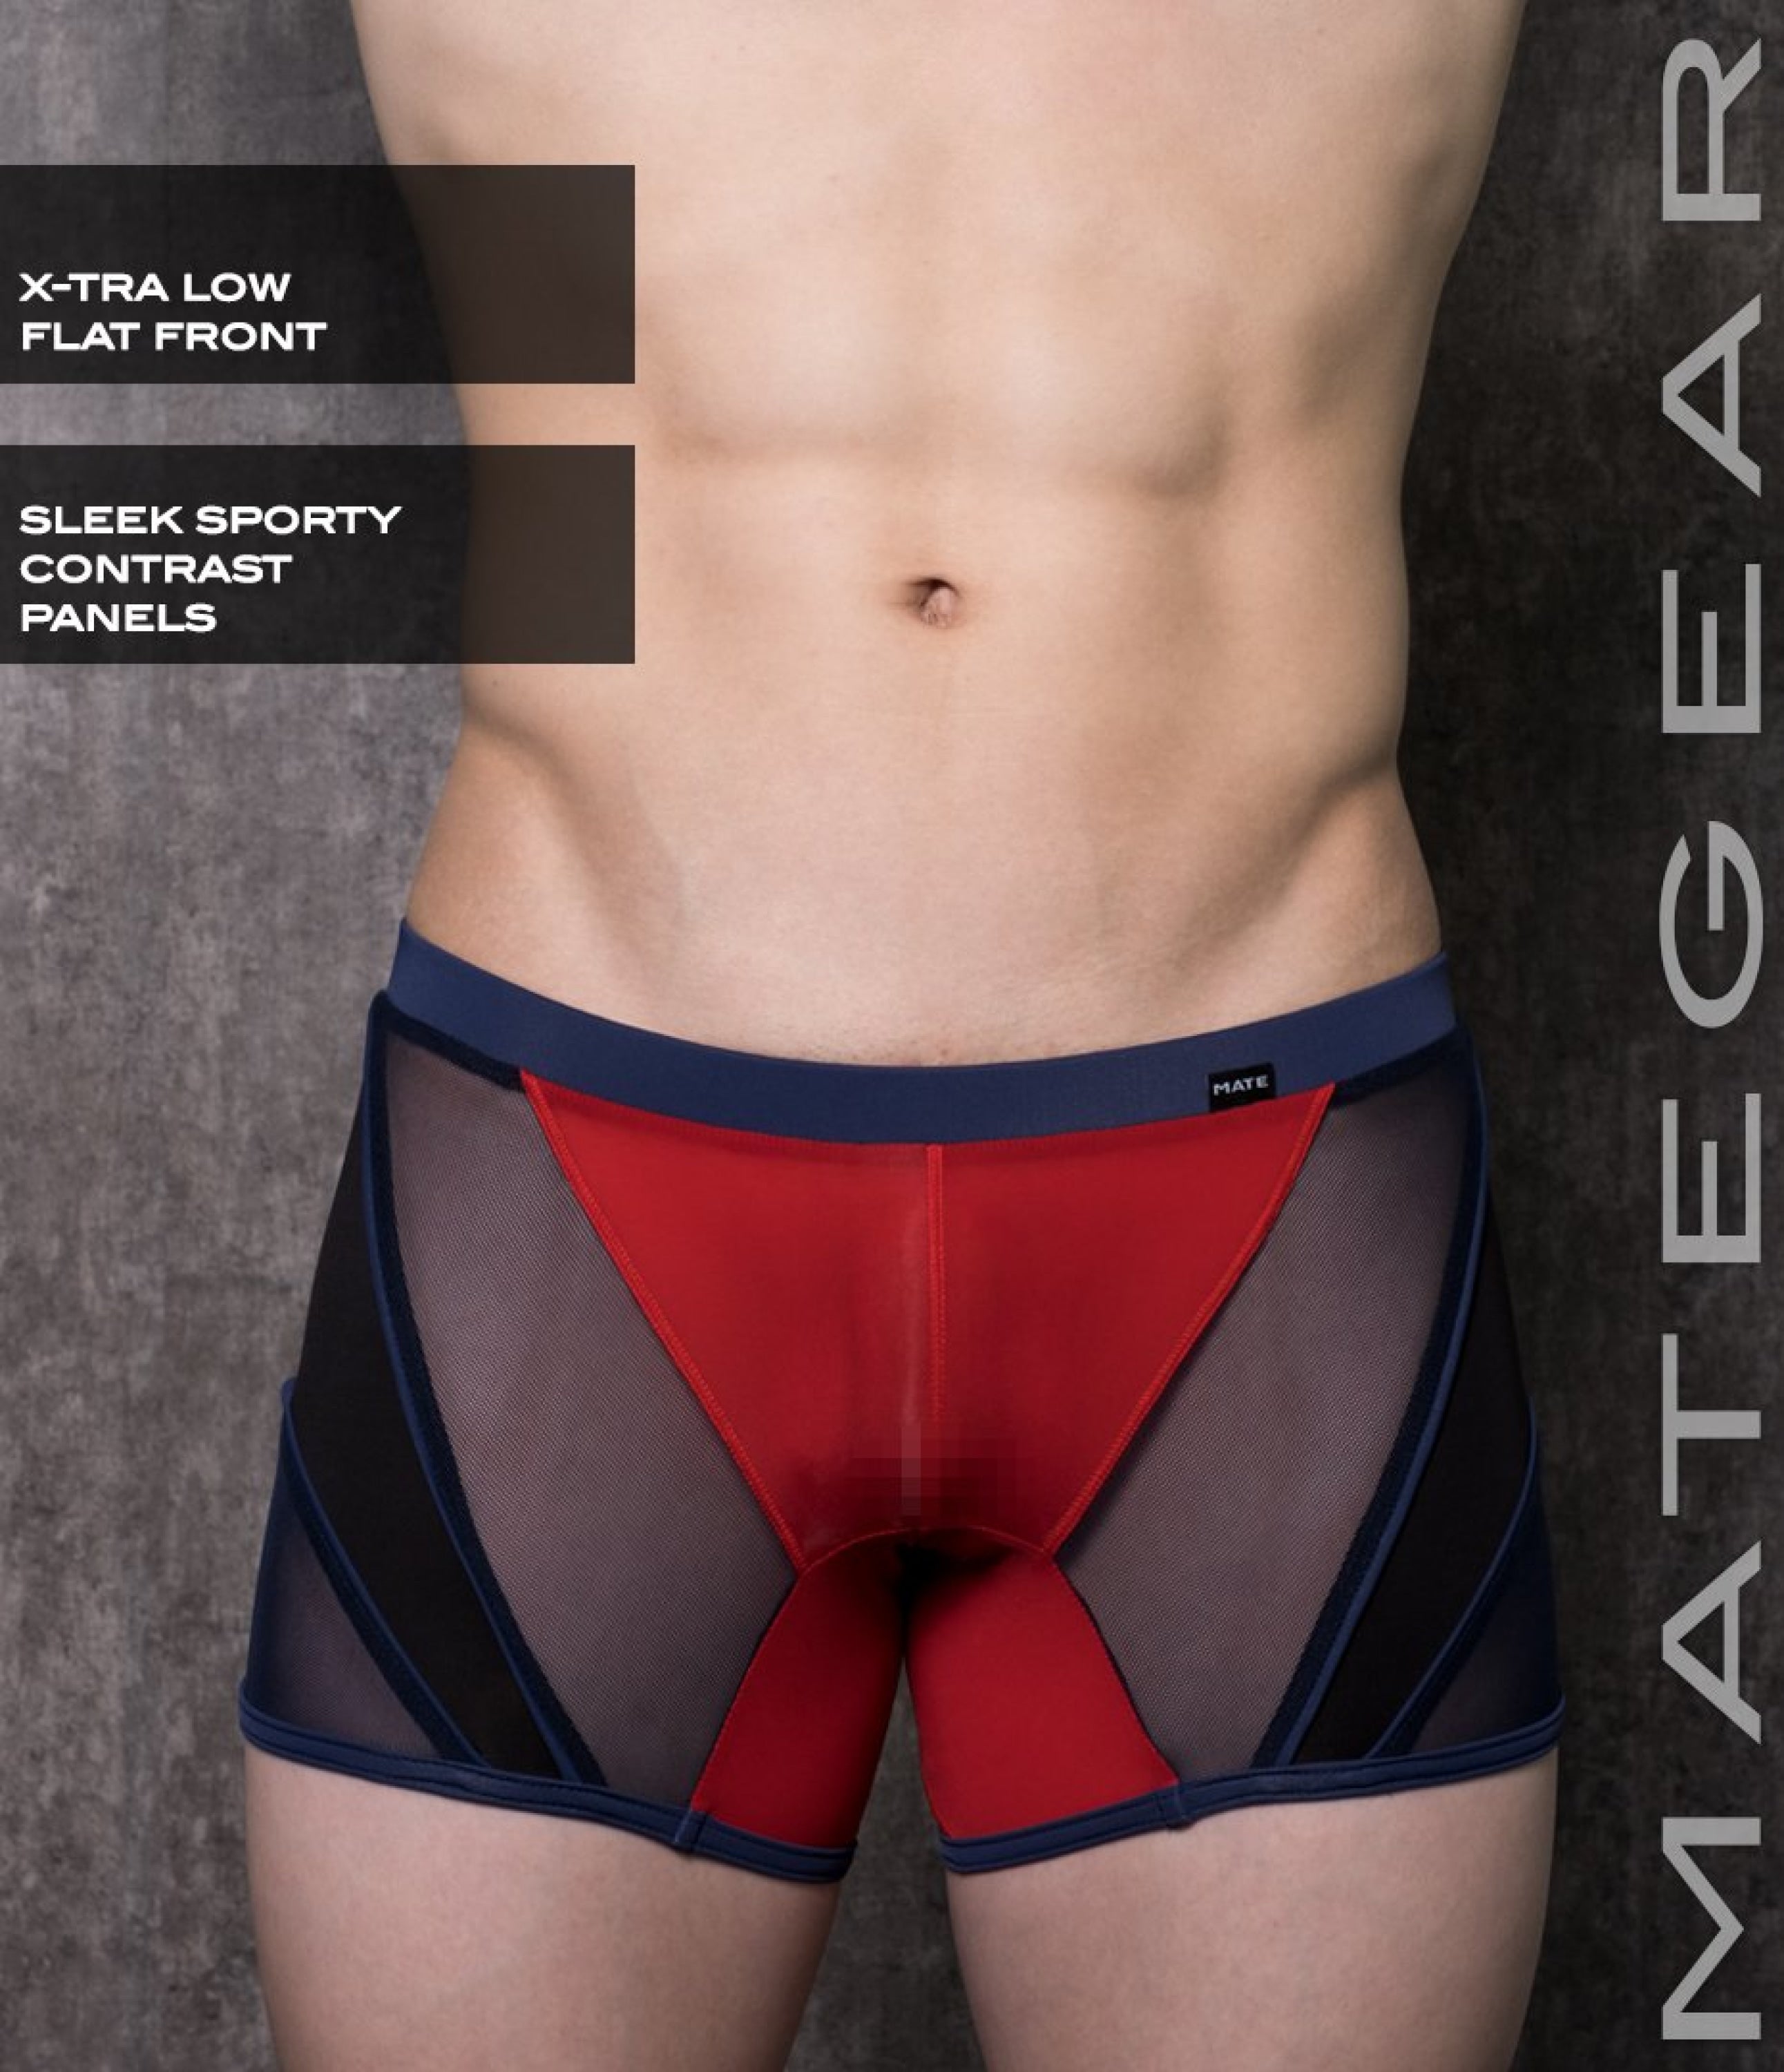 Sexy Mens Swimwear Mini Tights - Ryu Sook Ii (X-Tra Low Flat Front) Red Ultra Thin Nylon / Small